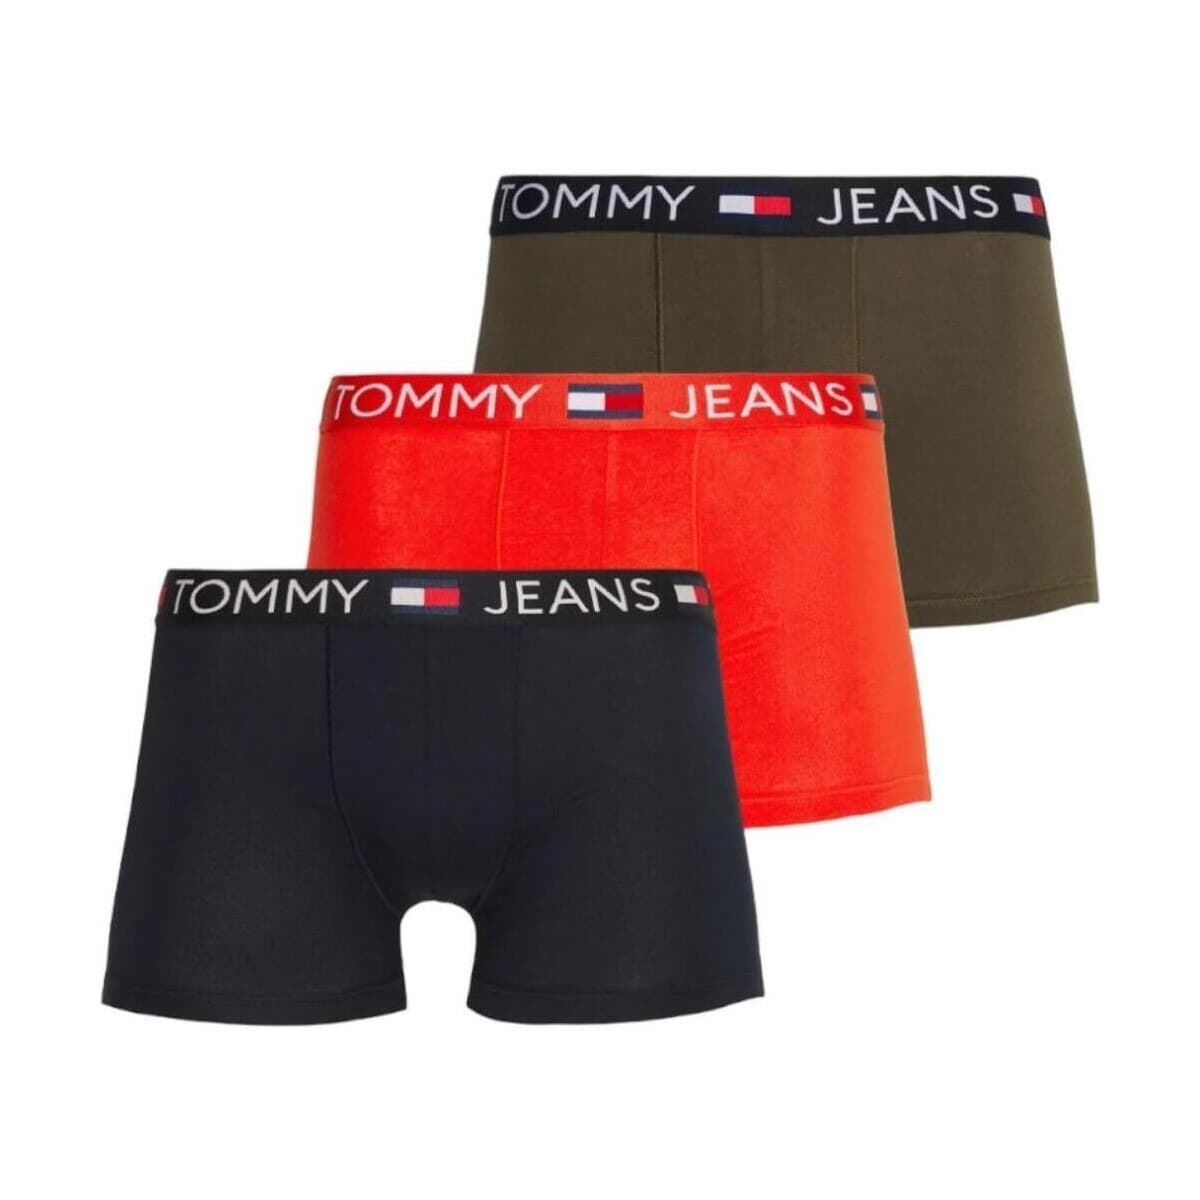 Pack 3 boxer Tommy Jeans UM0UM03290 0WC drk ngh nvy/hot heat/drb olve - Imagen 1